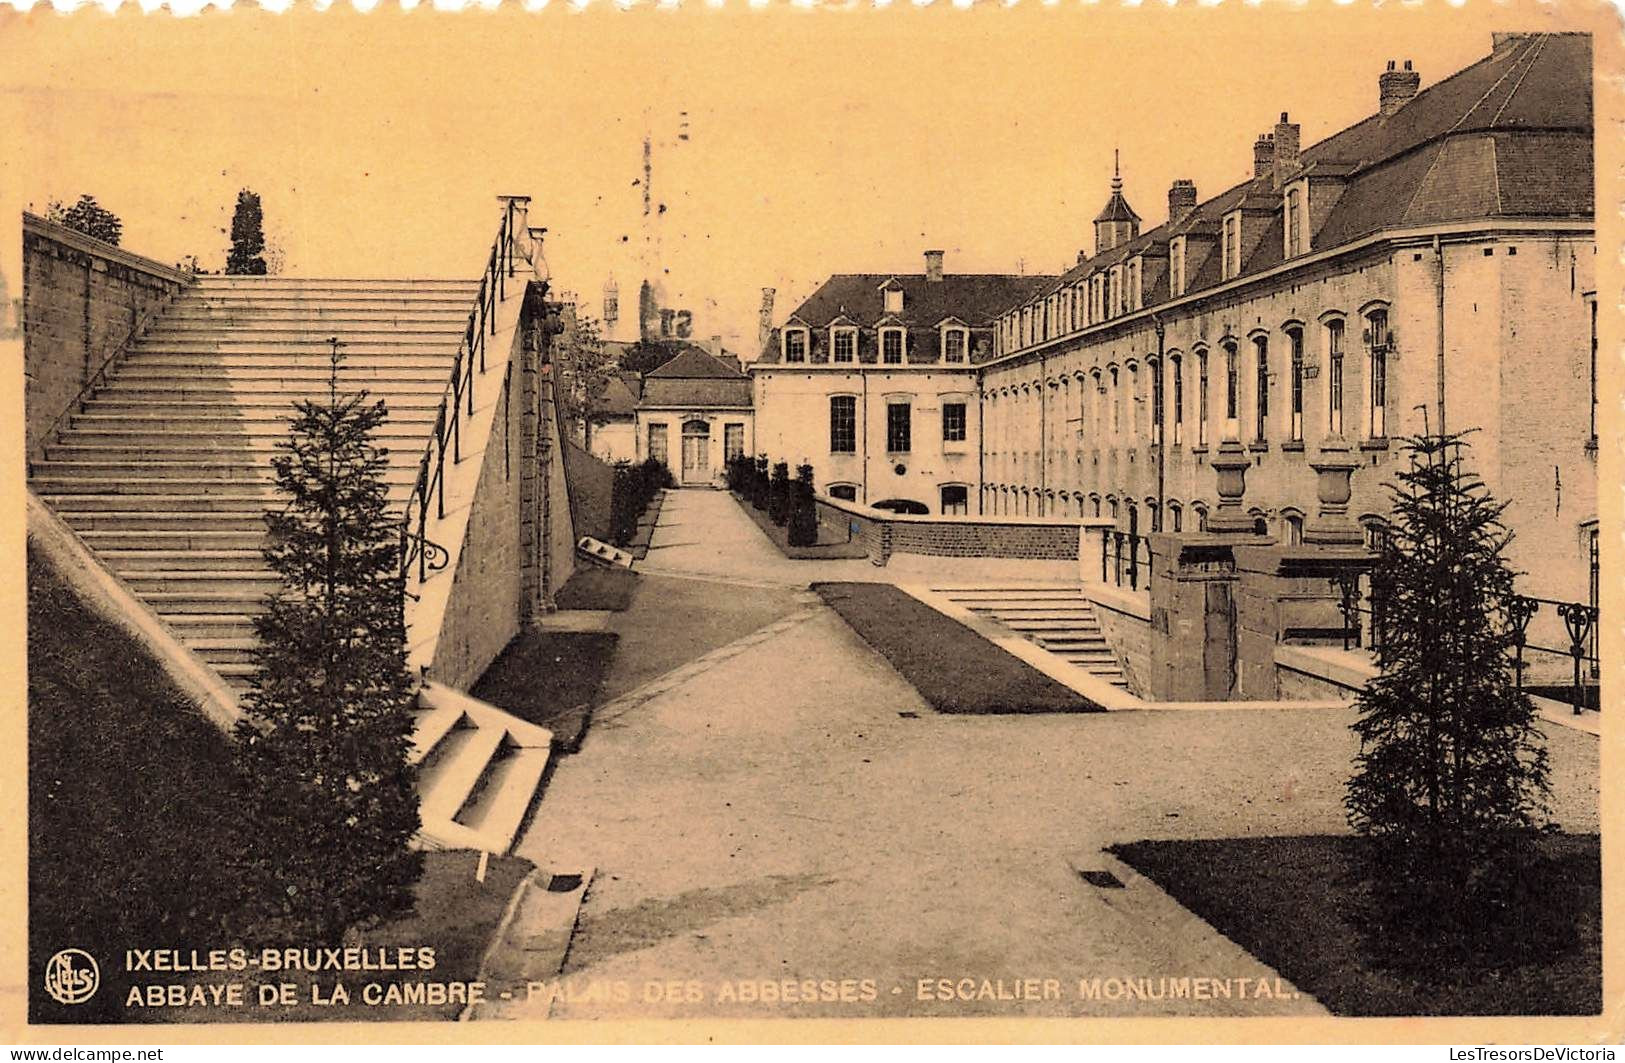 BELGIQUE - Bruxelle - Ixelles - Abbaye De La Cambre - Palais Des Abbesses - Escalier Monumental - Carte Postale Ancienne - Elsene - Ixelles